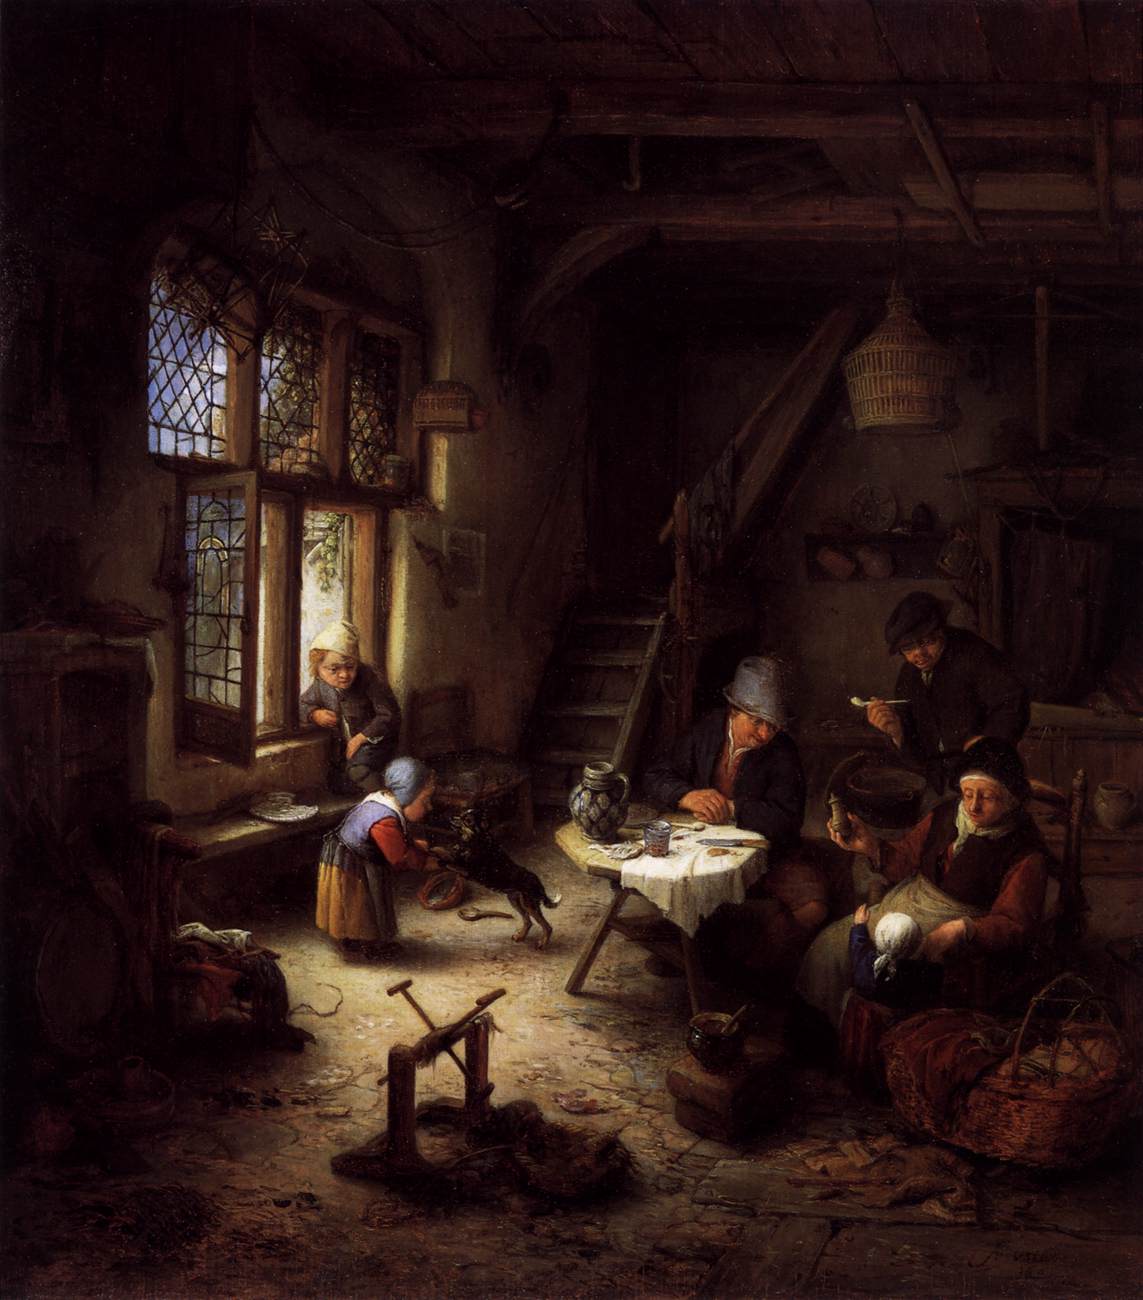 Família camponesa no interior de uma cabana